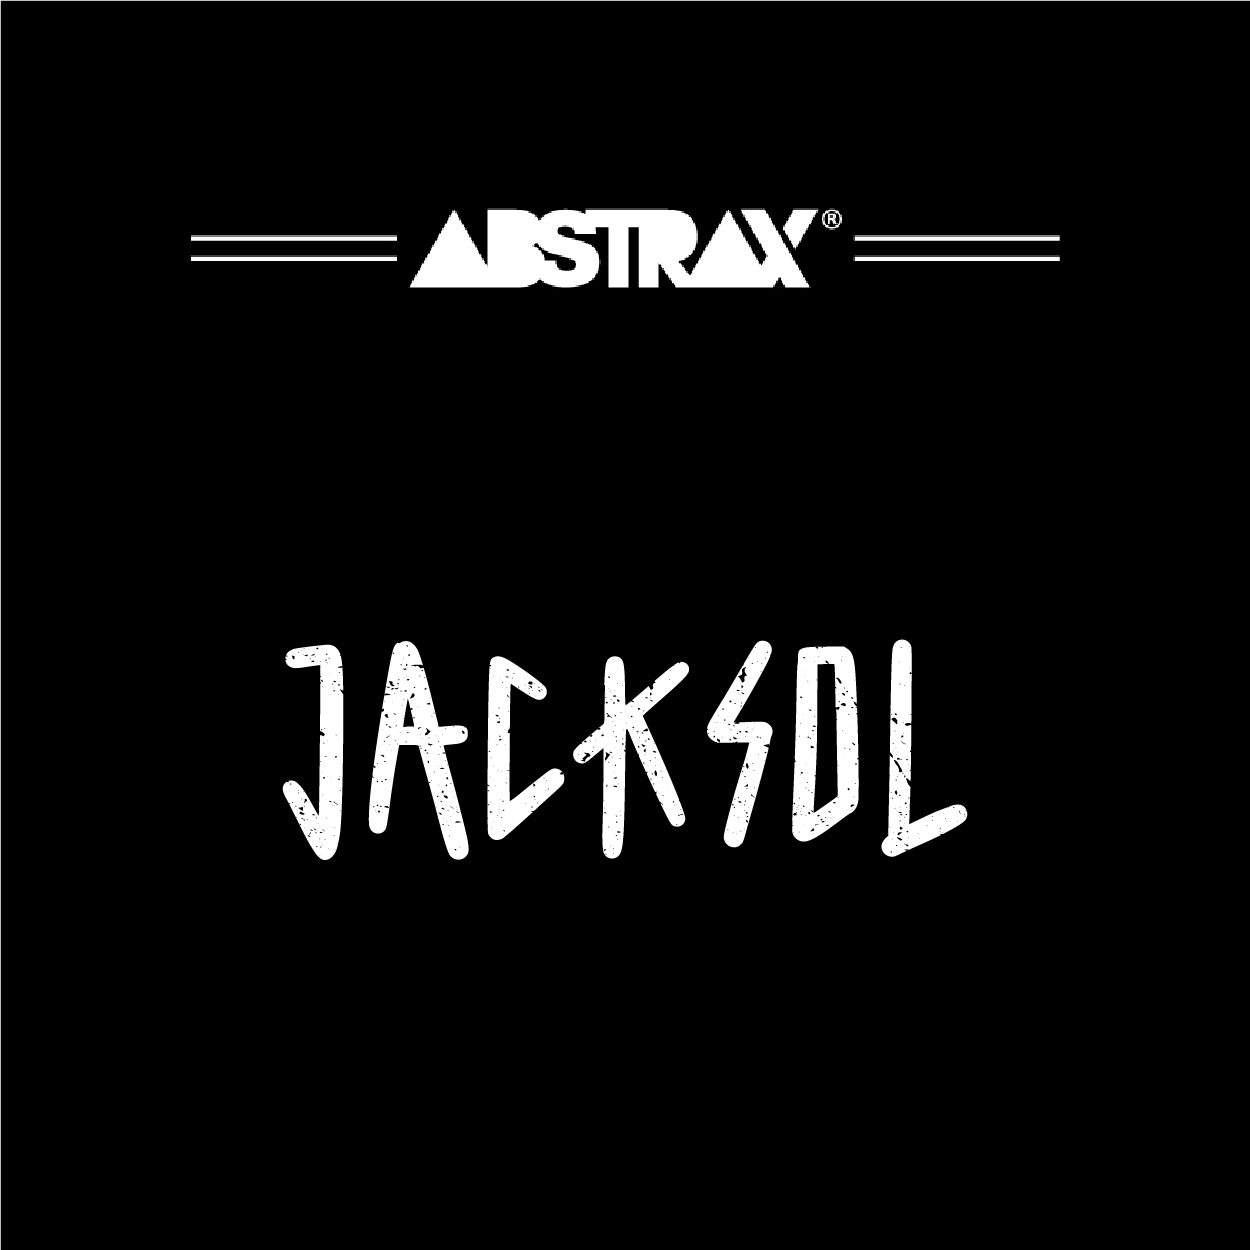 ABSTRAX® x Jacksol™